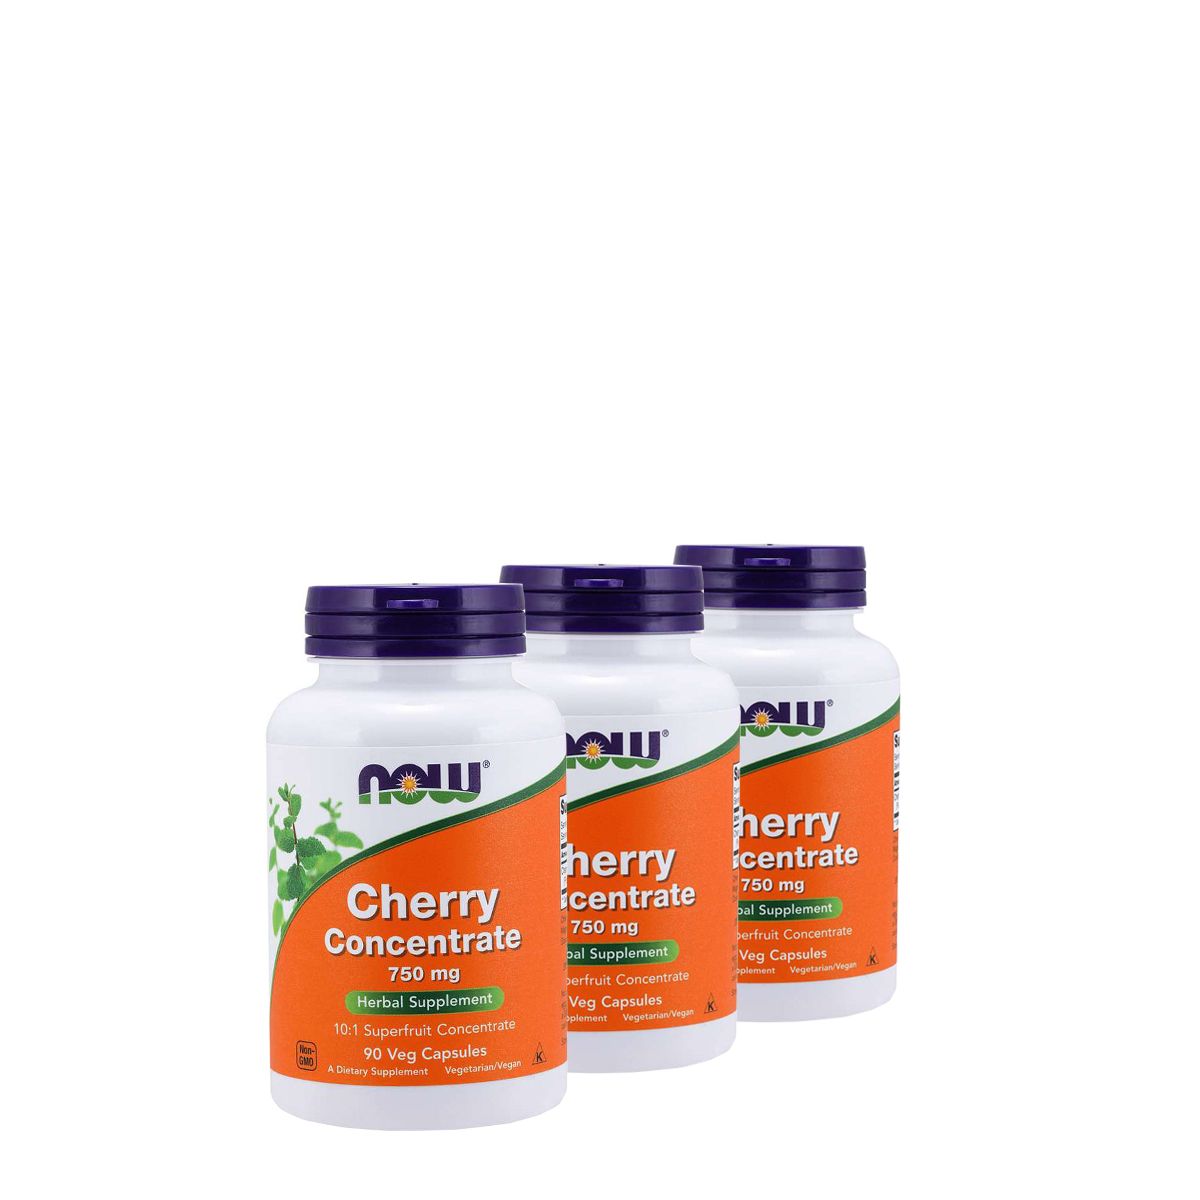 Cseresznye koncentrátum 750 mg, Now Cherry Concentrate, 3x90 kapszula